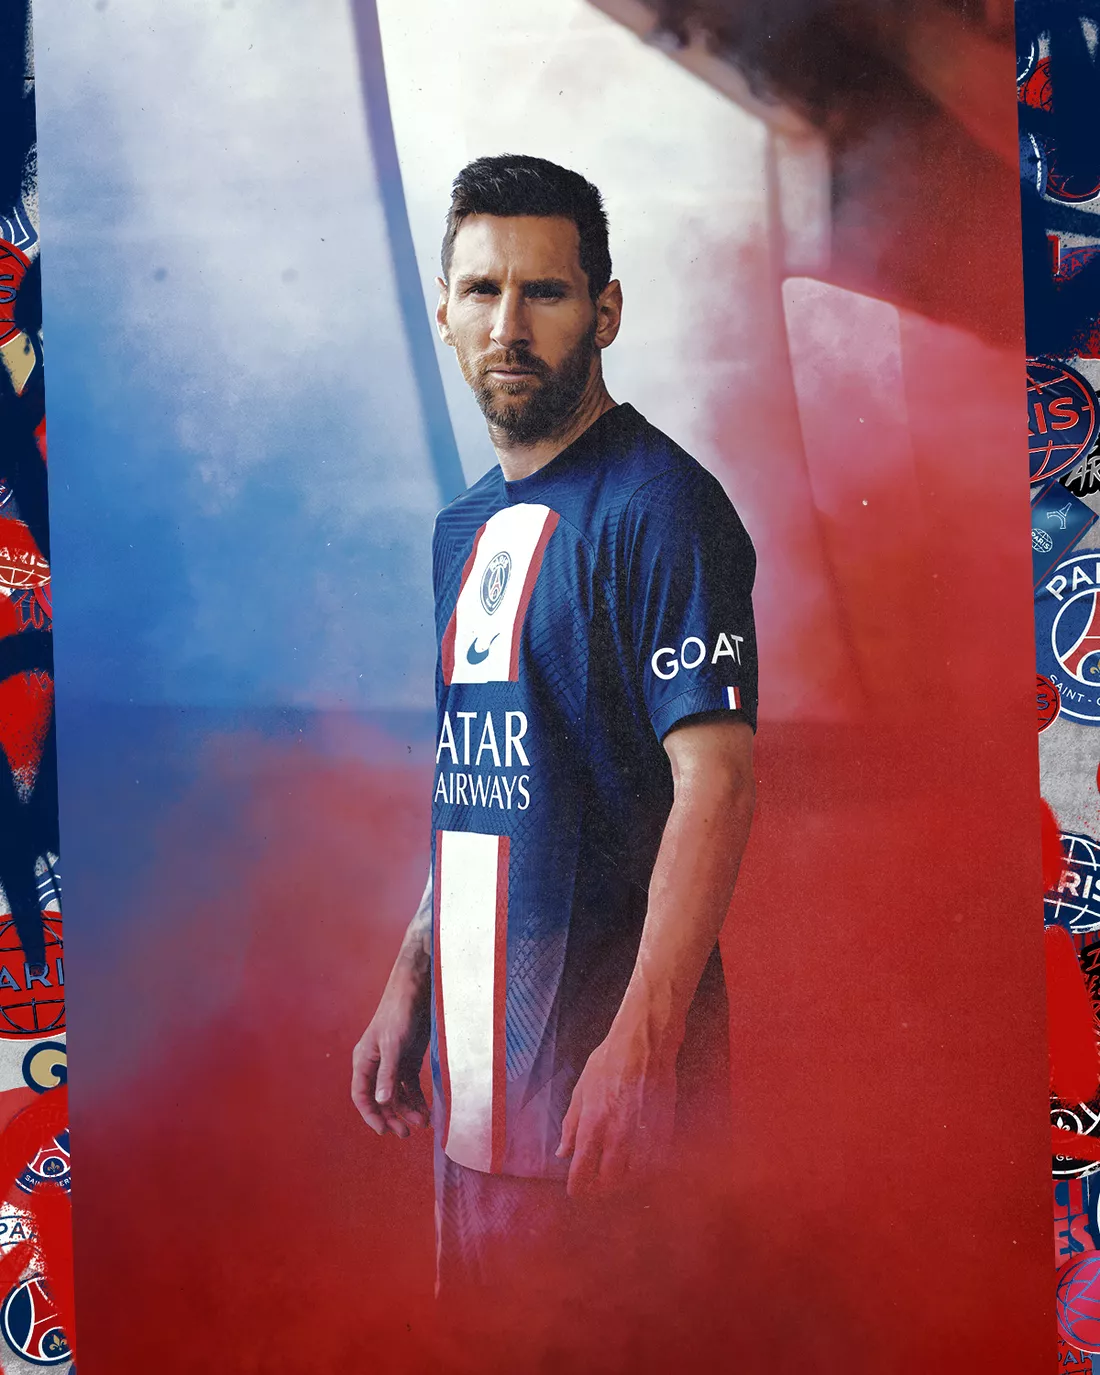 root courtyard layer PSG și-a prezentat echipamentul pentru sezonul viitor. Messi, Neymar și  Mbappe vor îmbrăca tricoul cu ”GOAT”. Foto - Fanatik.ro